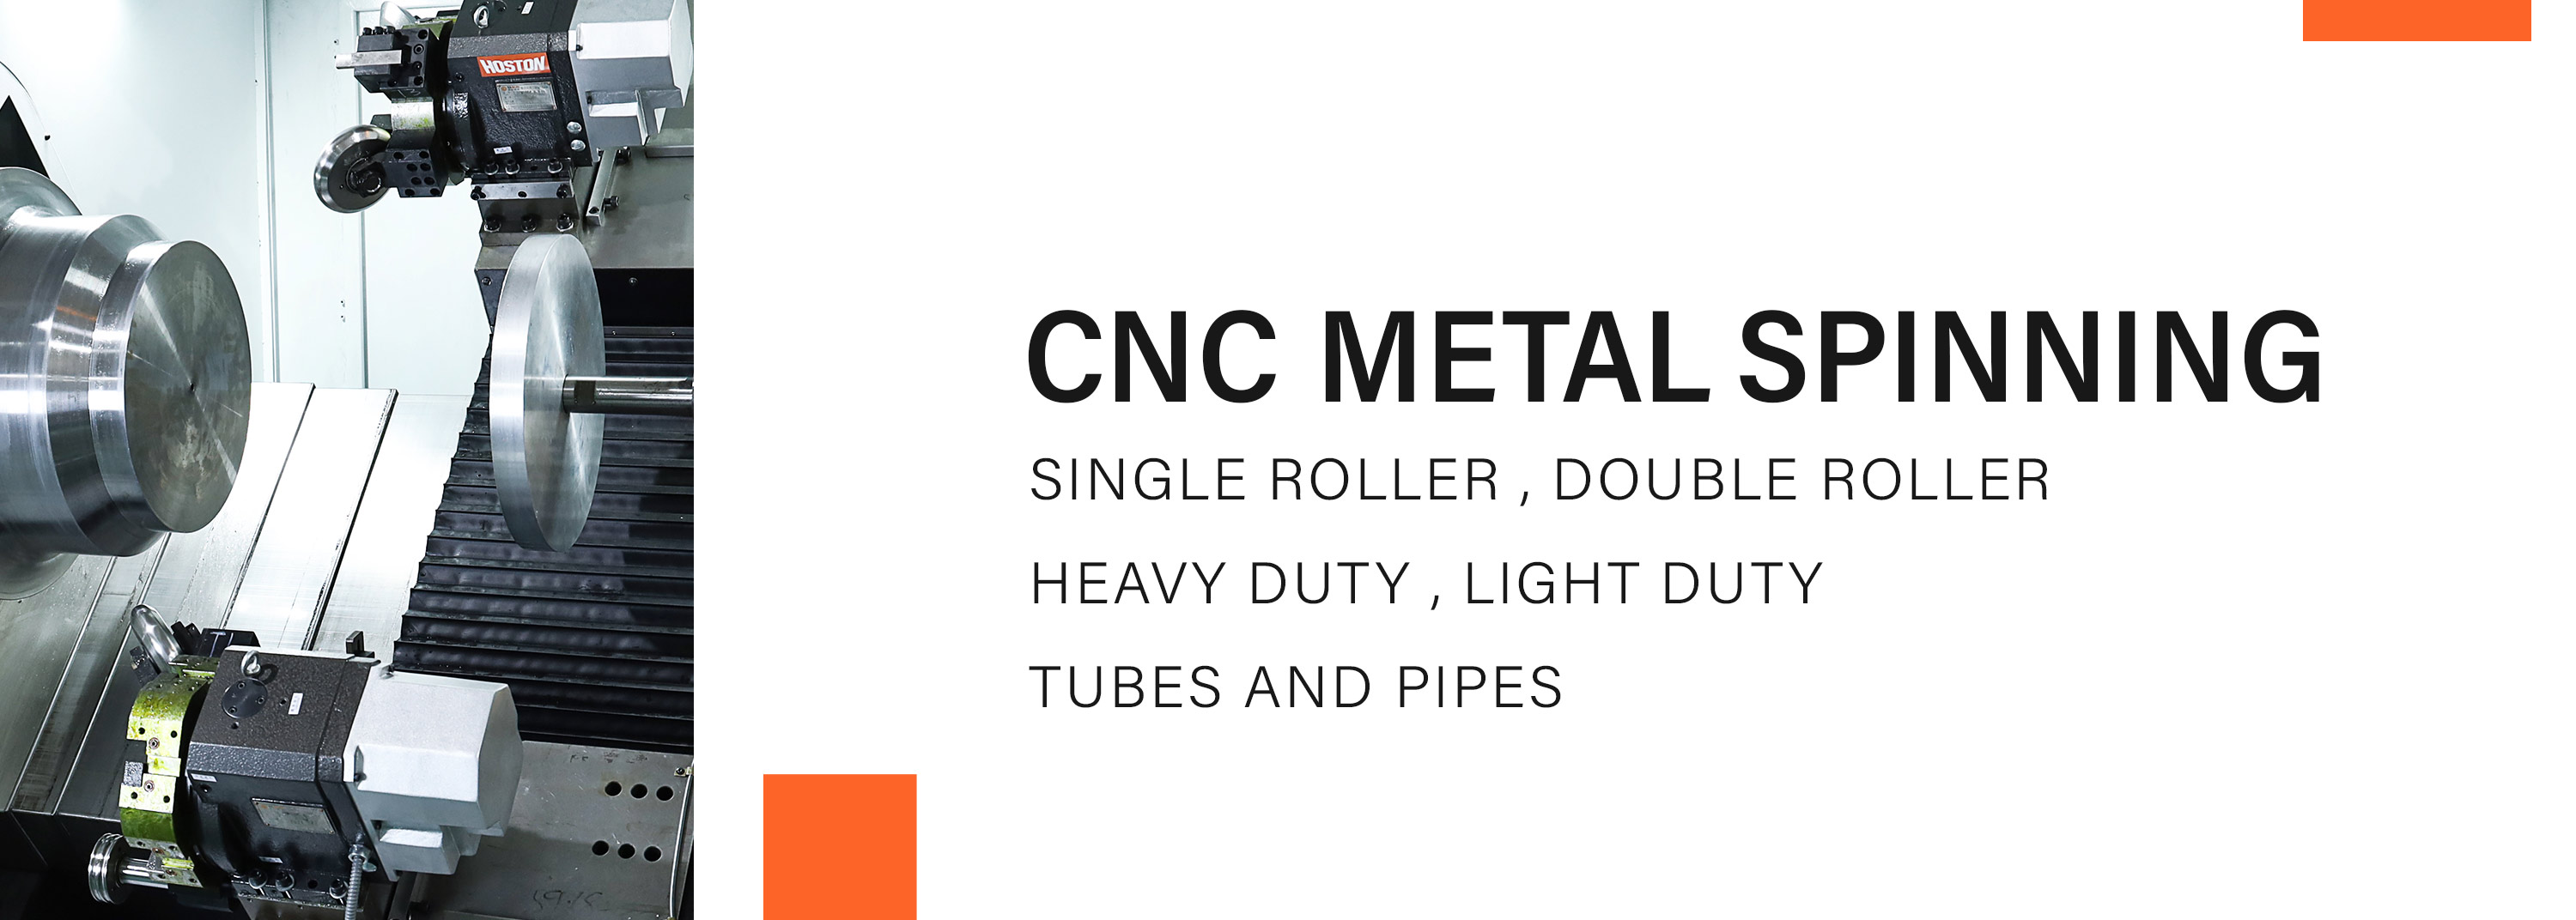 CNC METAL SPINING